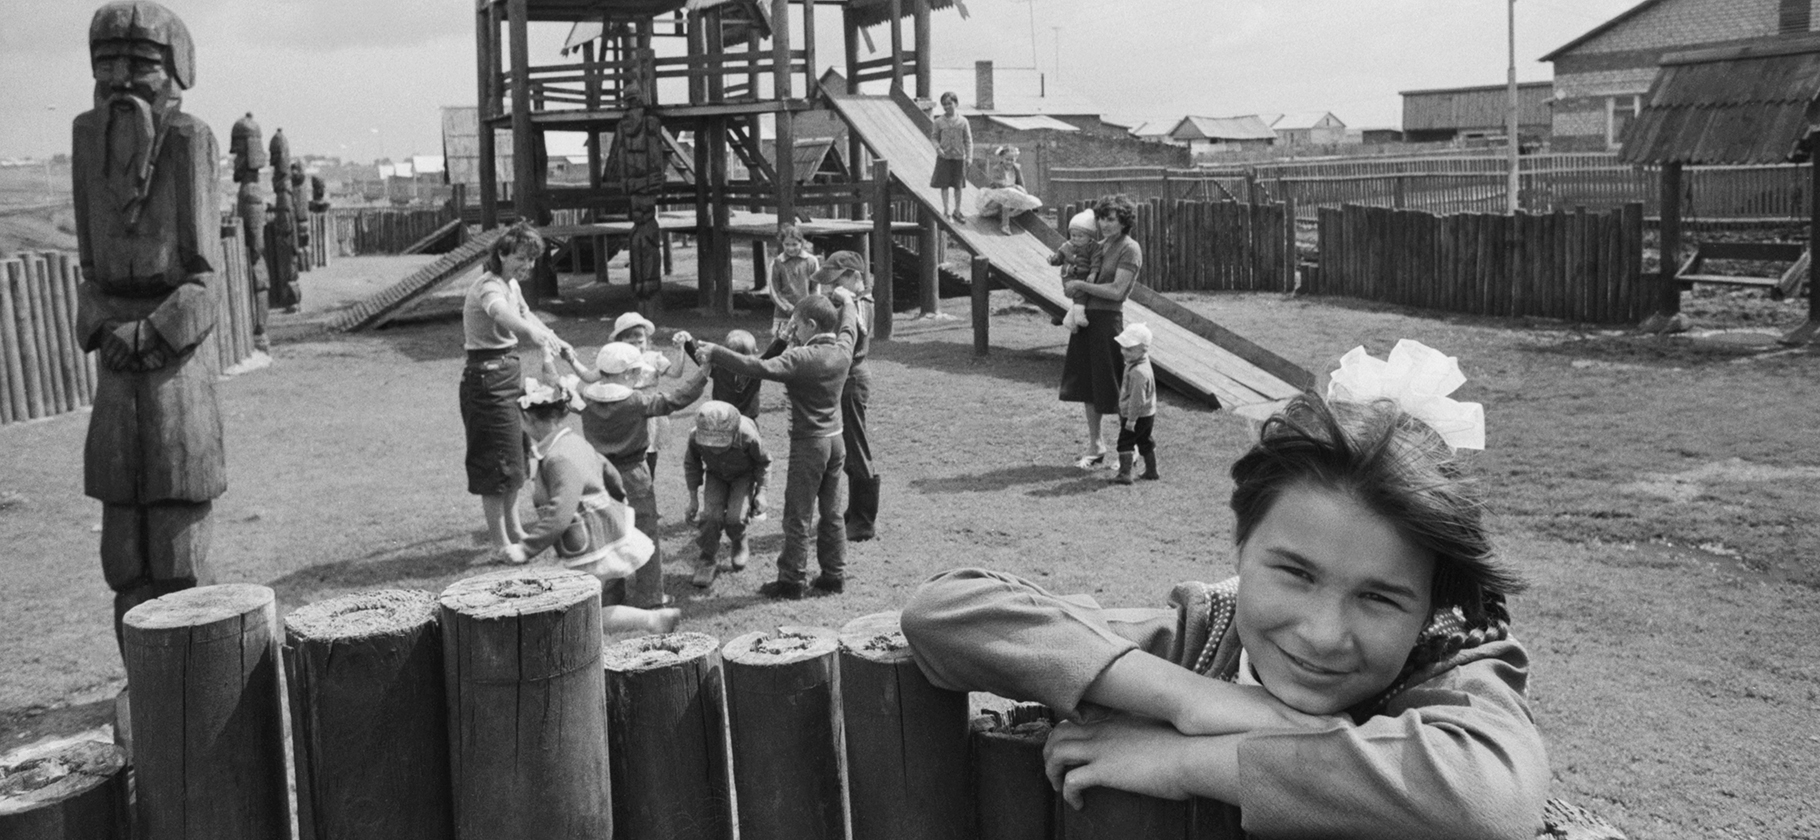 10 дворовых игр времен СССР, которым можно научить современных детей